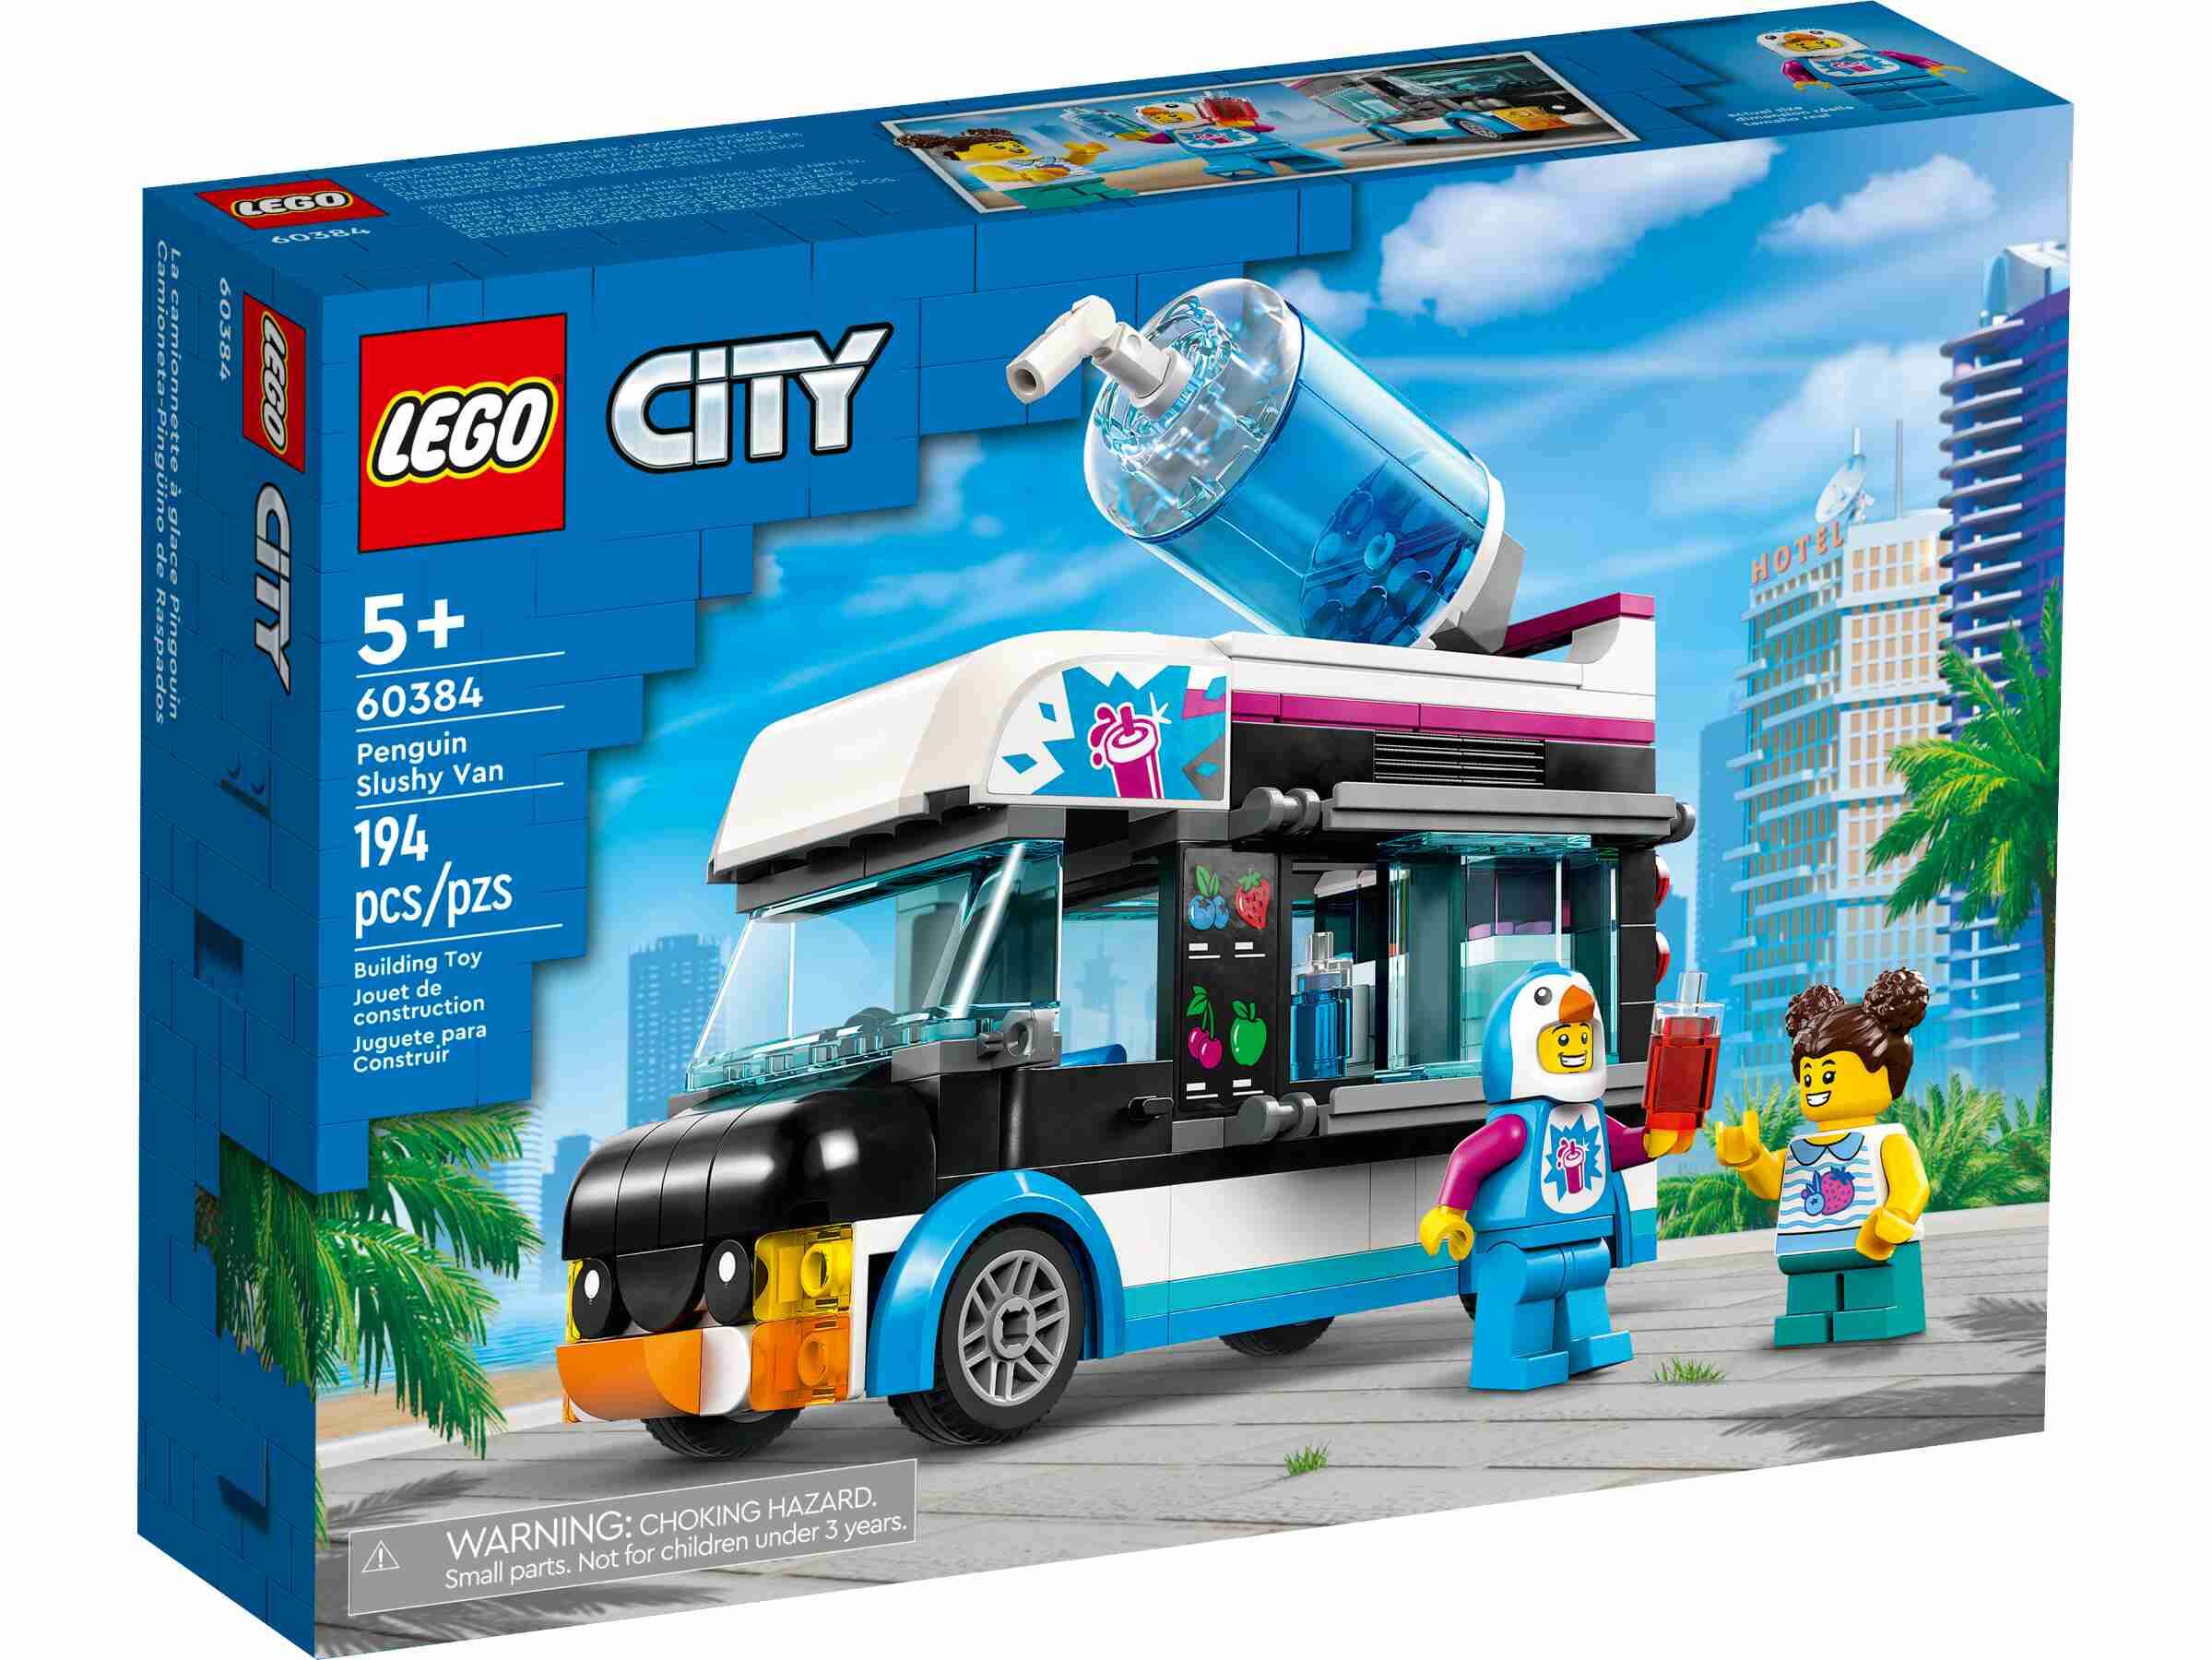 LEGO 60384 City Slush-Eiswagen, Eisverkäufer im Pinguinkostüm, Starke Fahrzeuge